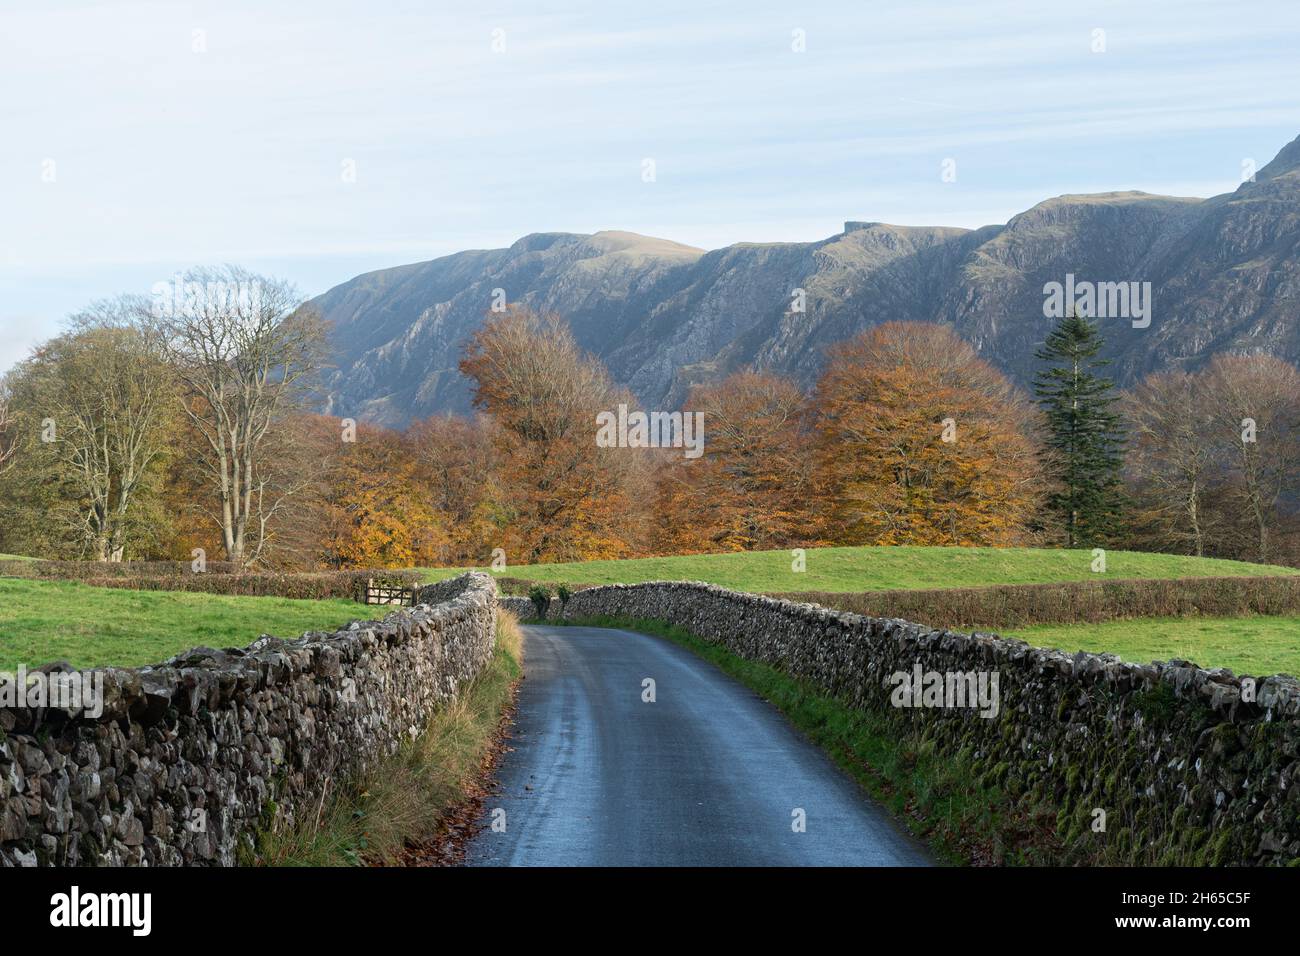 Schmale Landstraße, die von Trockensteinmauern in der Nähe von Wastwater (Wastwater) in Cumbria, England, im Herbst mit steilen Berggipfeln begrenzt wird Stockfoto